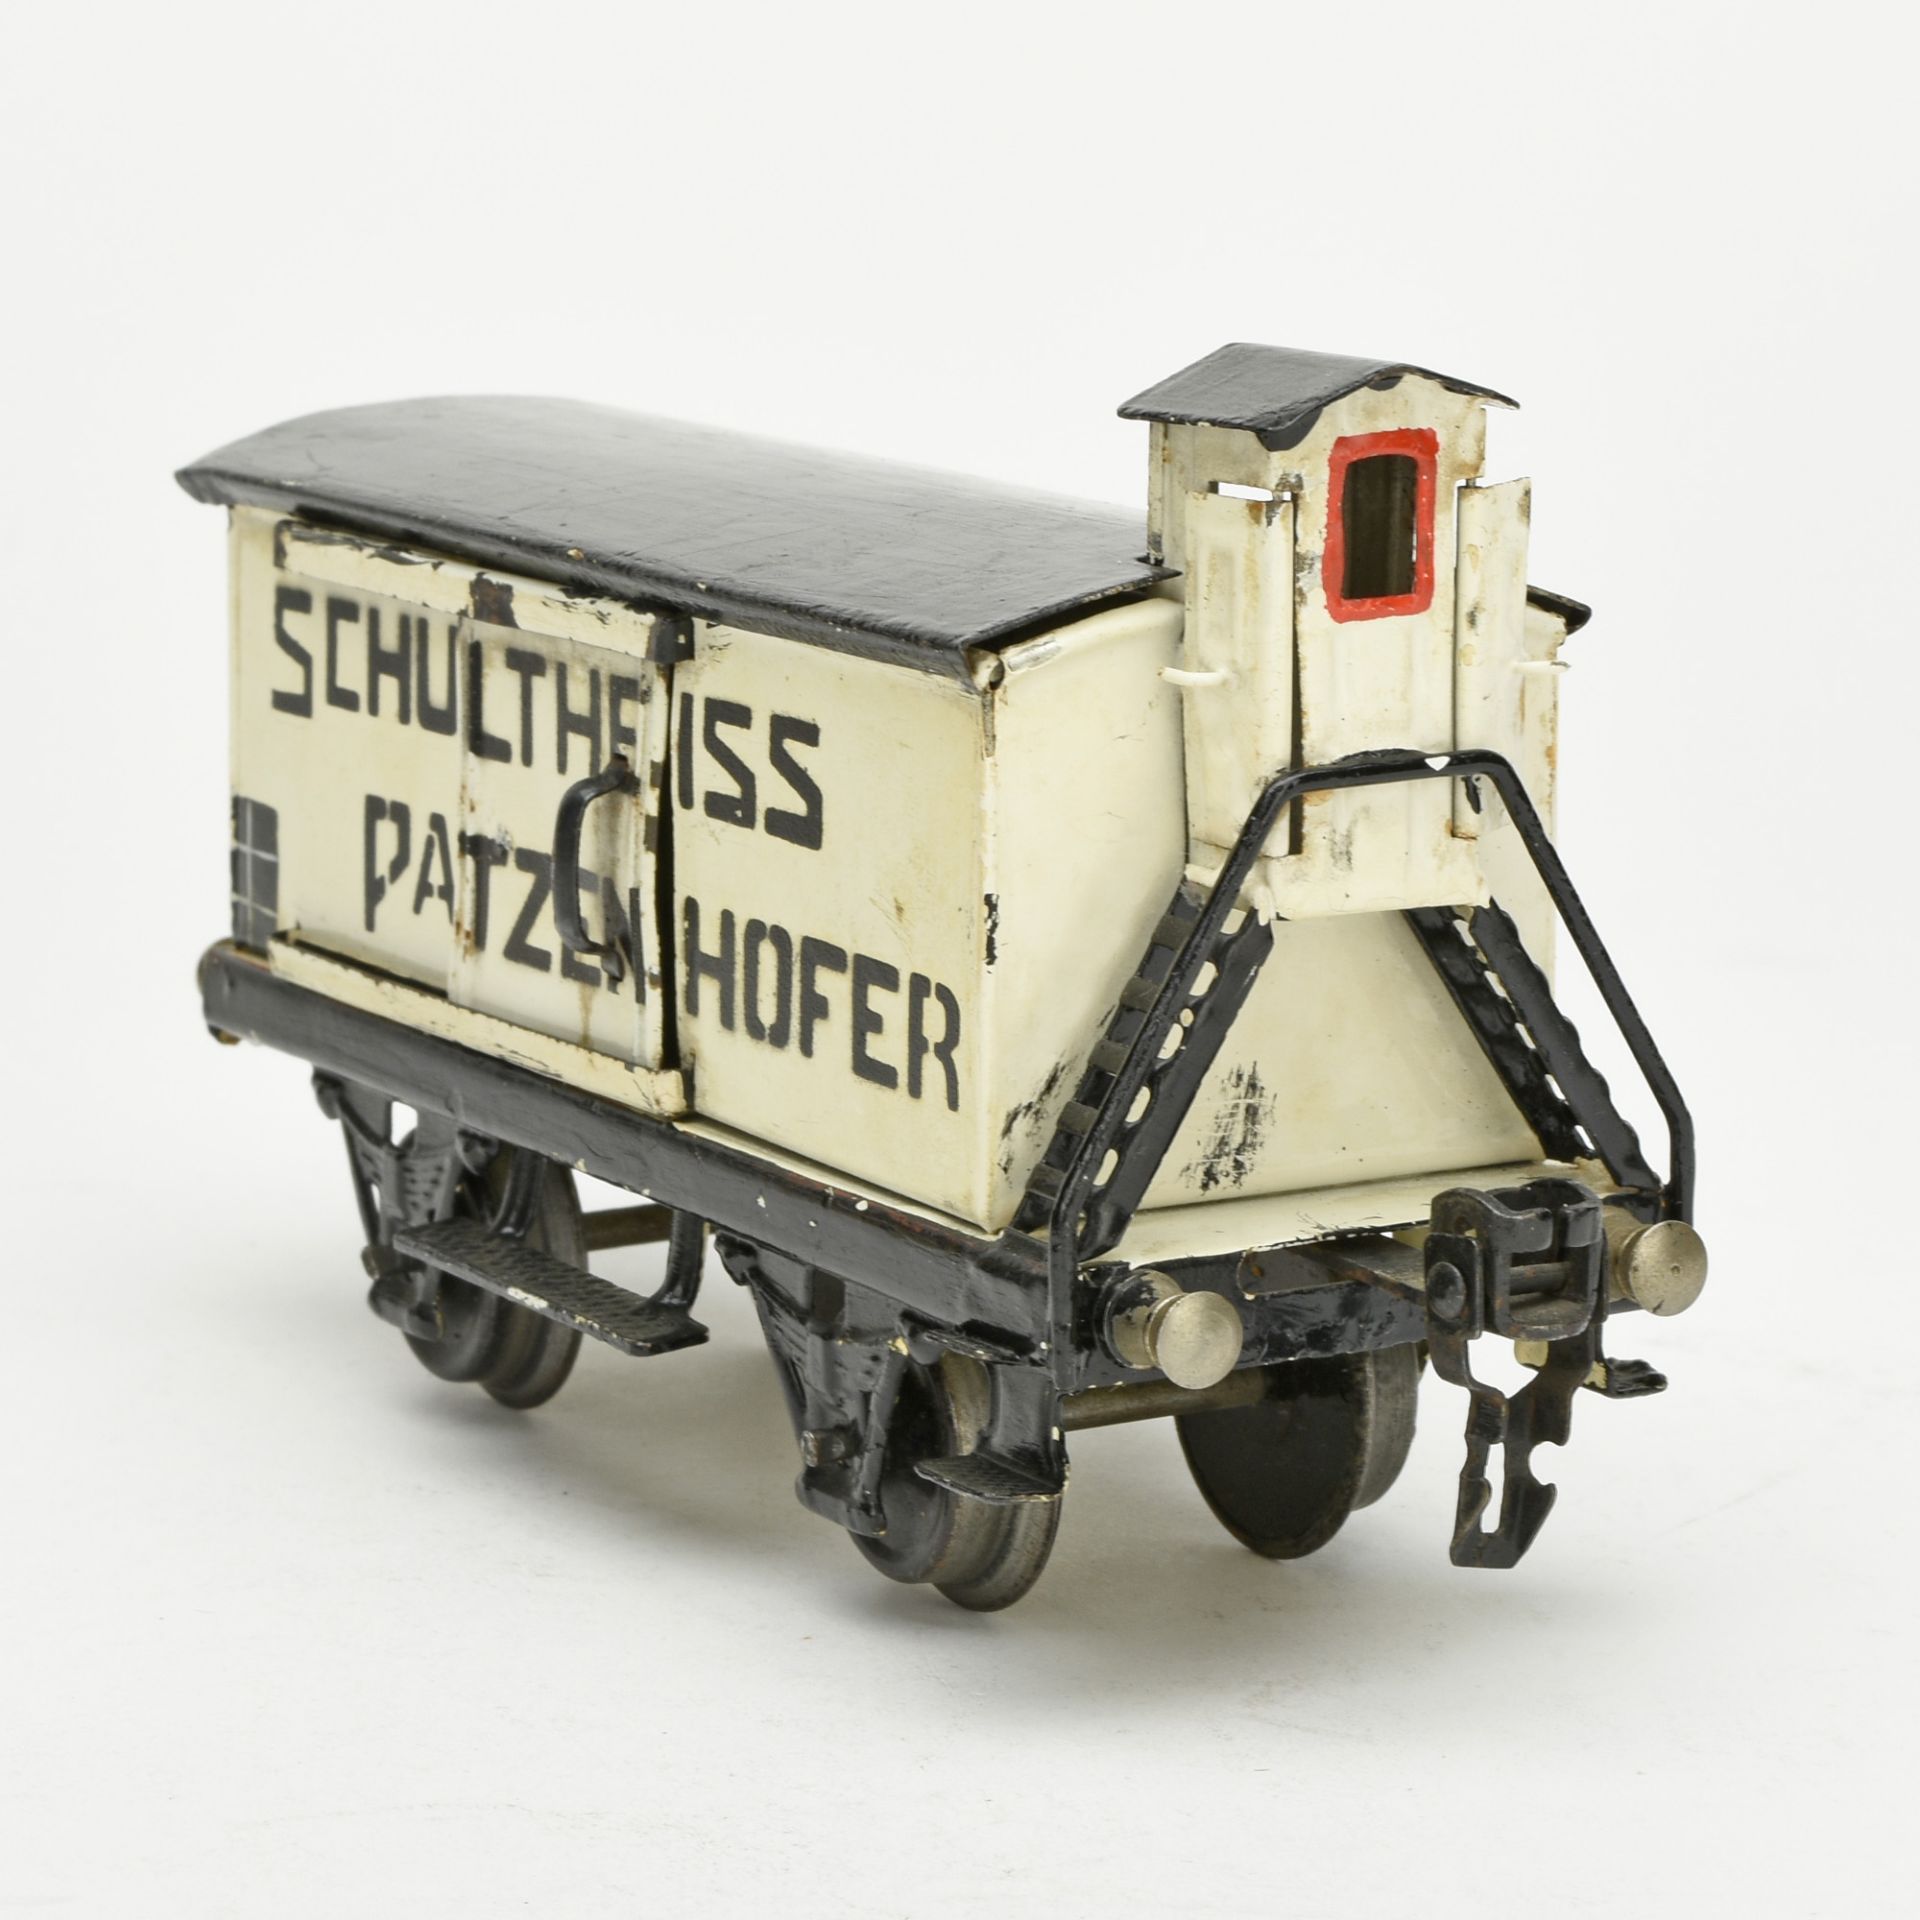 Bierwagen Schultheiss-Patzenhofer - Bild 3 aus 5